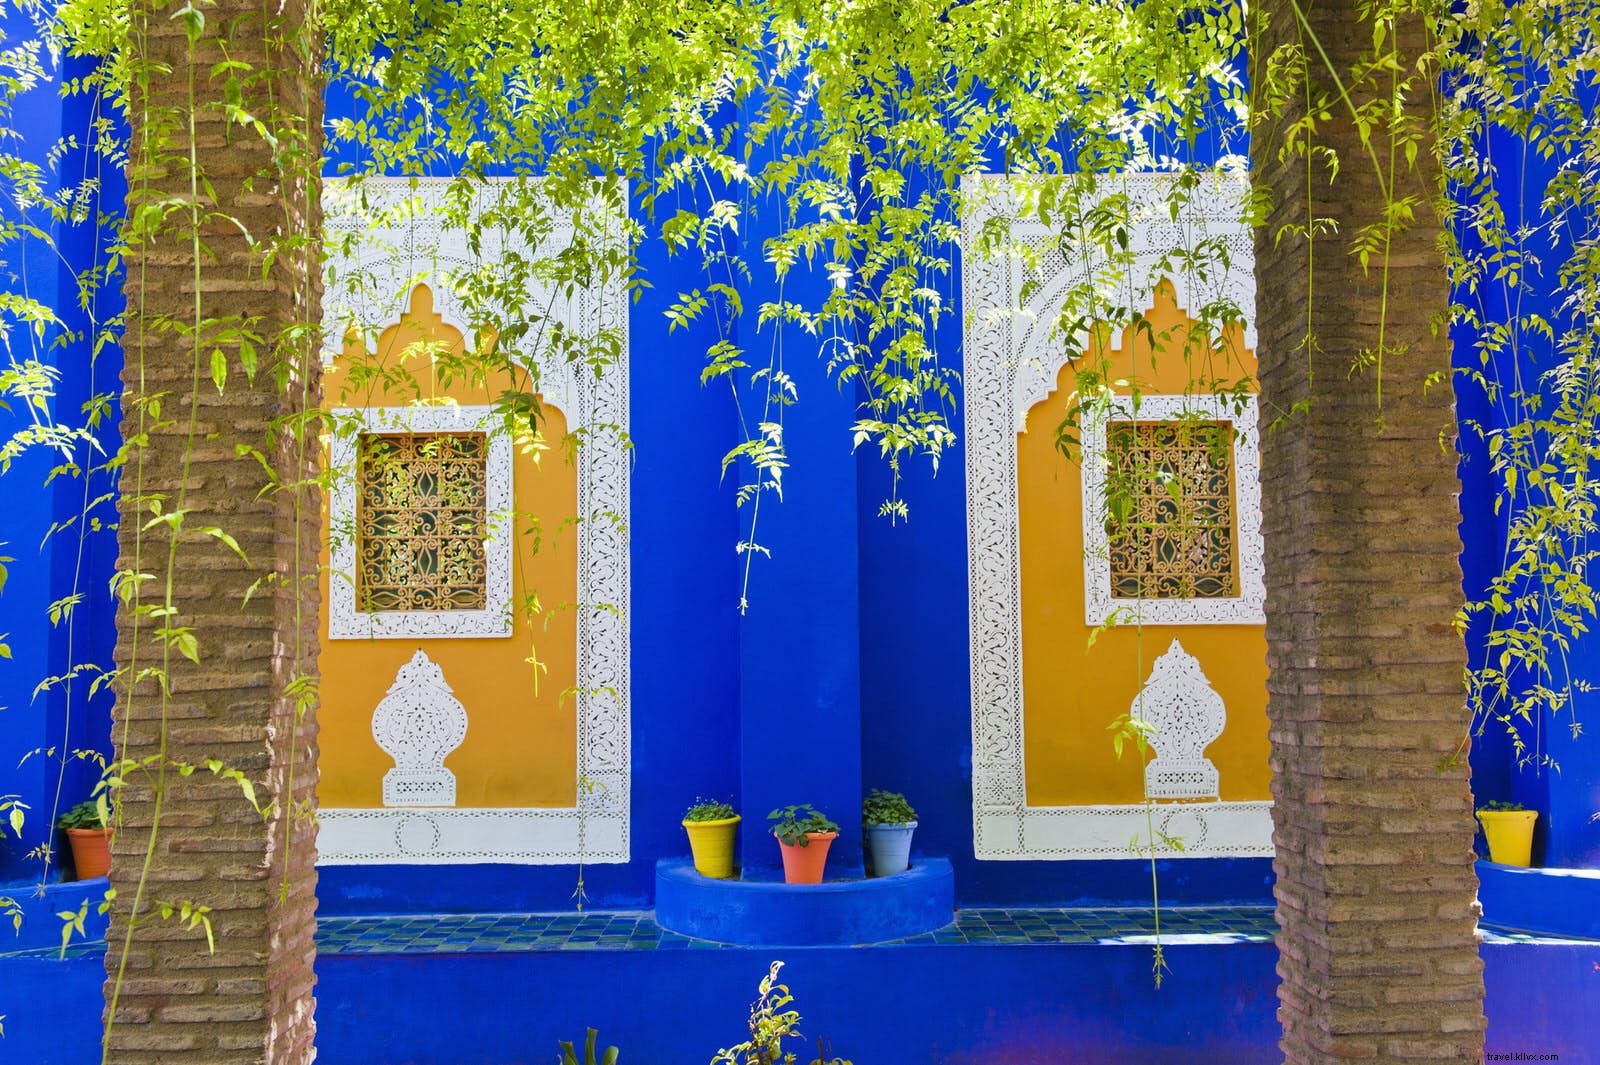 Memanfaatkan Marrakesh yang kreatif, Pusat seni dan desain Maroko 